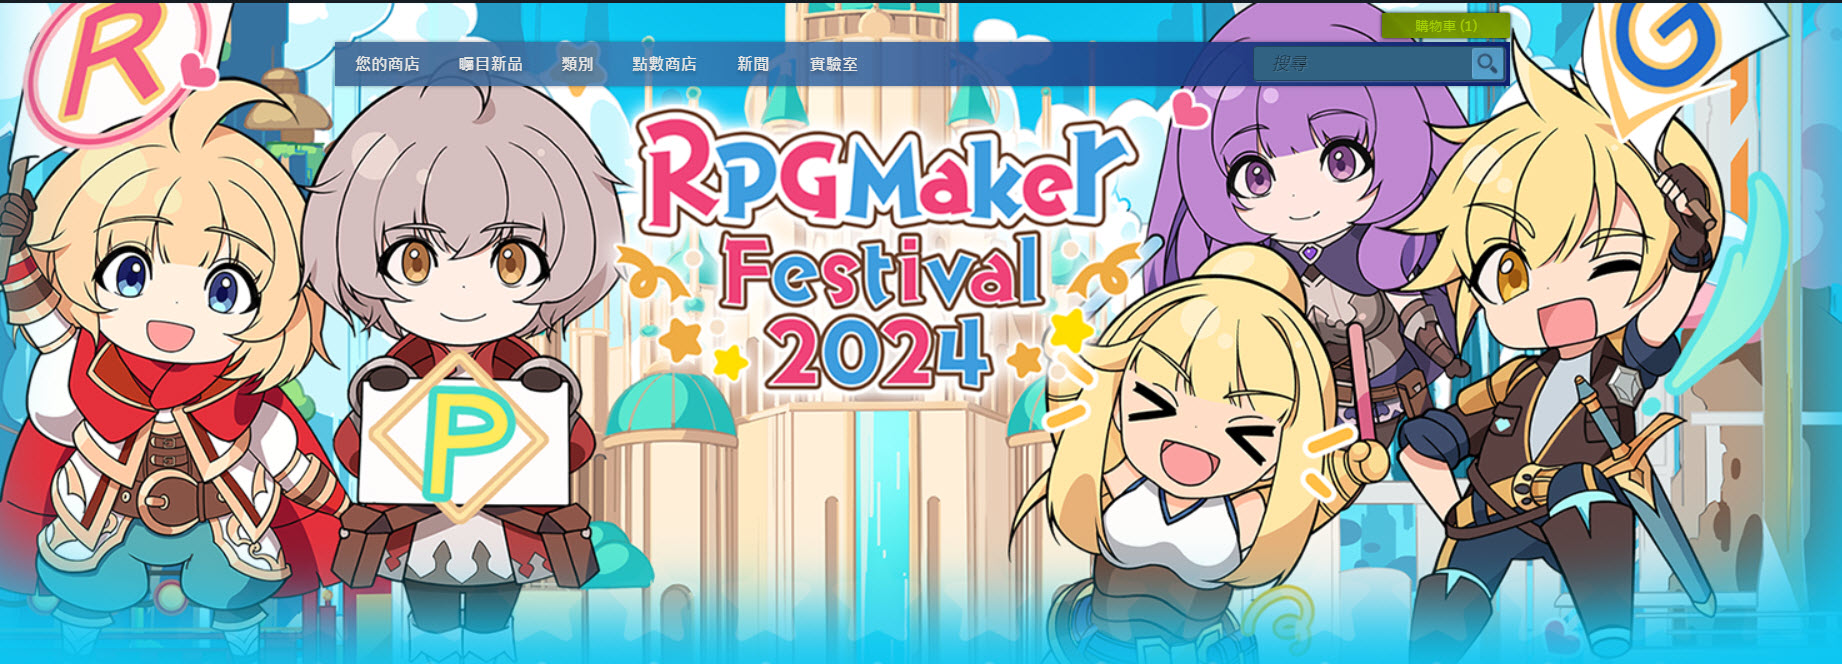 可製作遊戲的《RPG Maker XP》Steam限時免費領取 關聯產品節慶活動特惠中 - 電腦王阿達